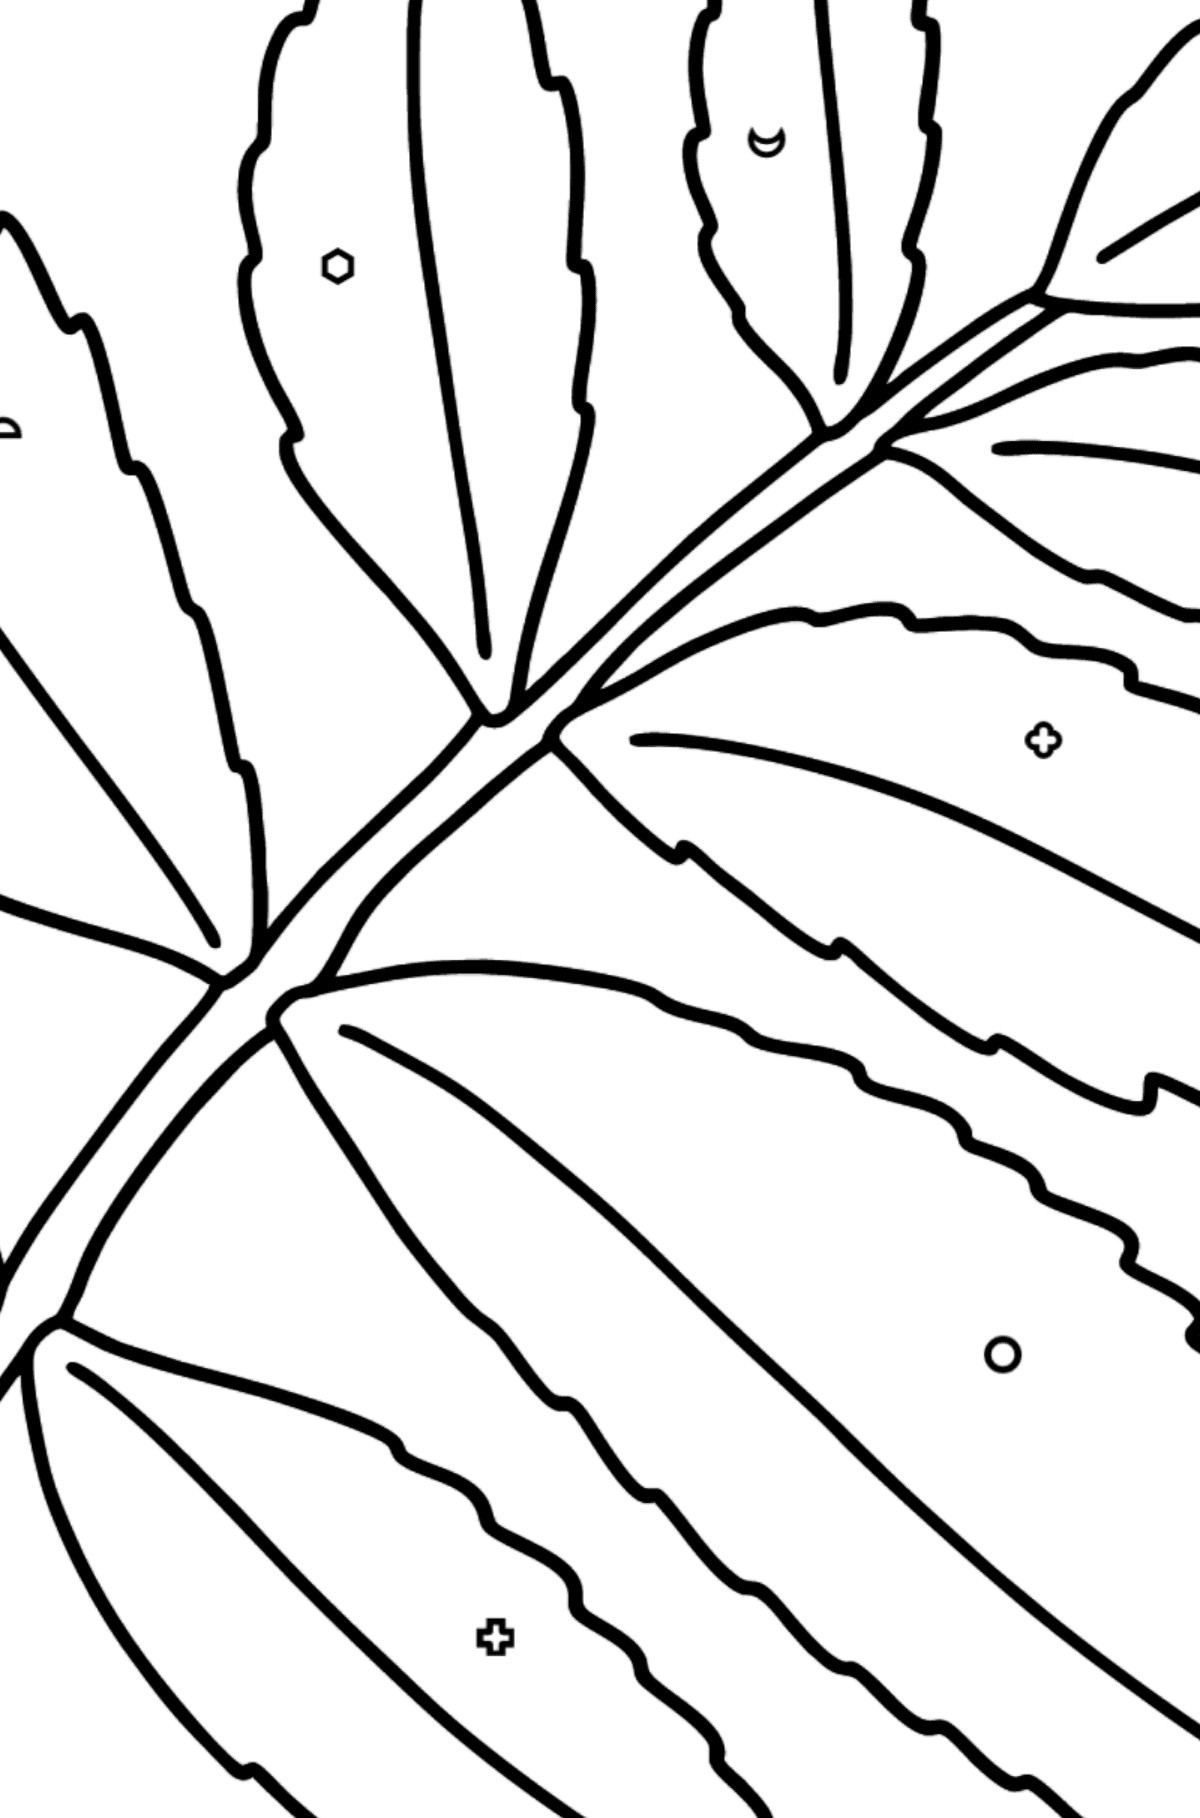 Dibujo de Hoja de árbol de Sumac para colorear - Colorear por Formas Geométricas para Niños